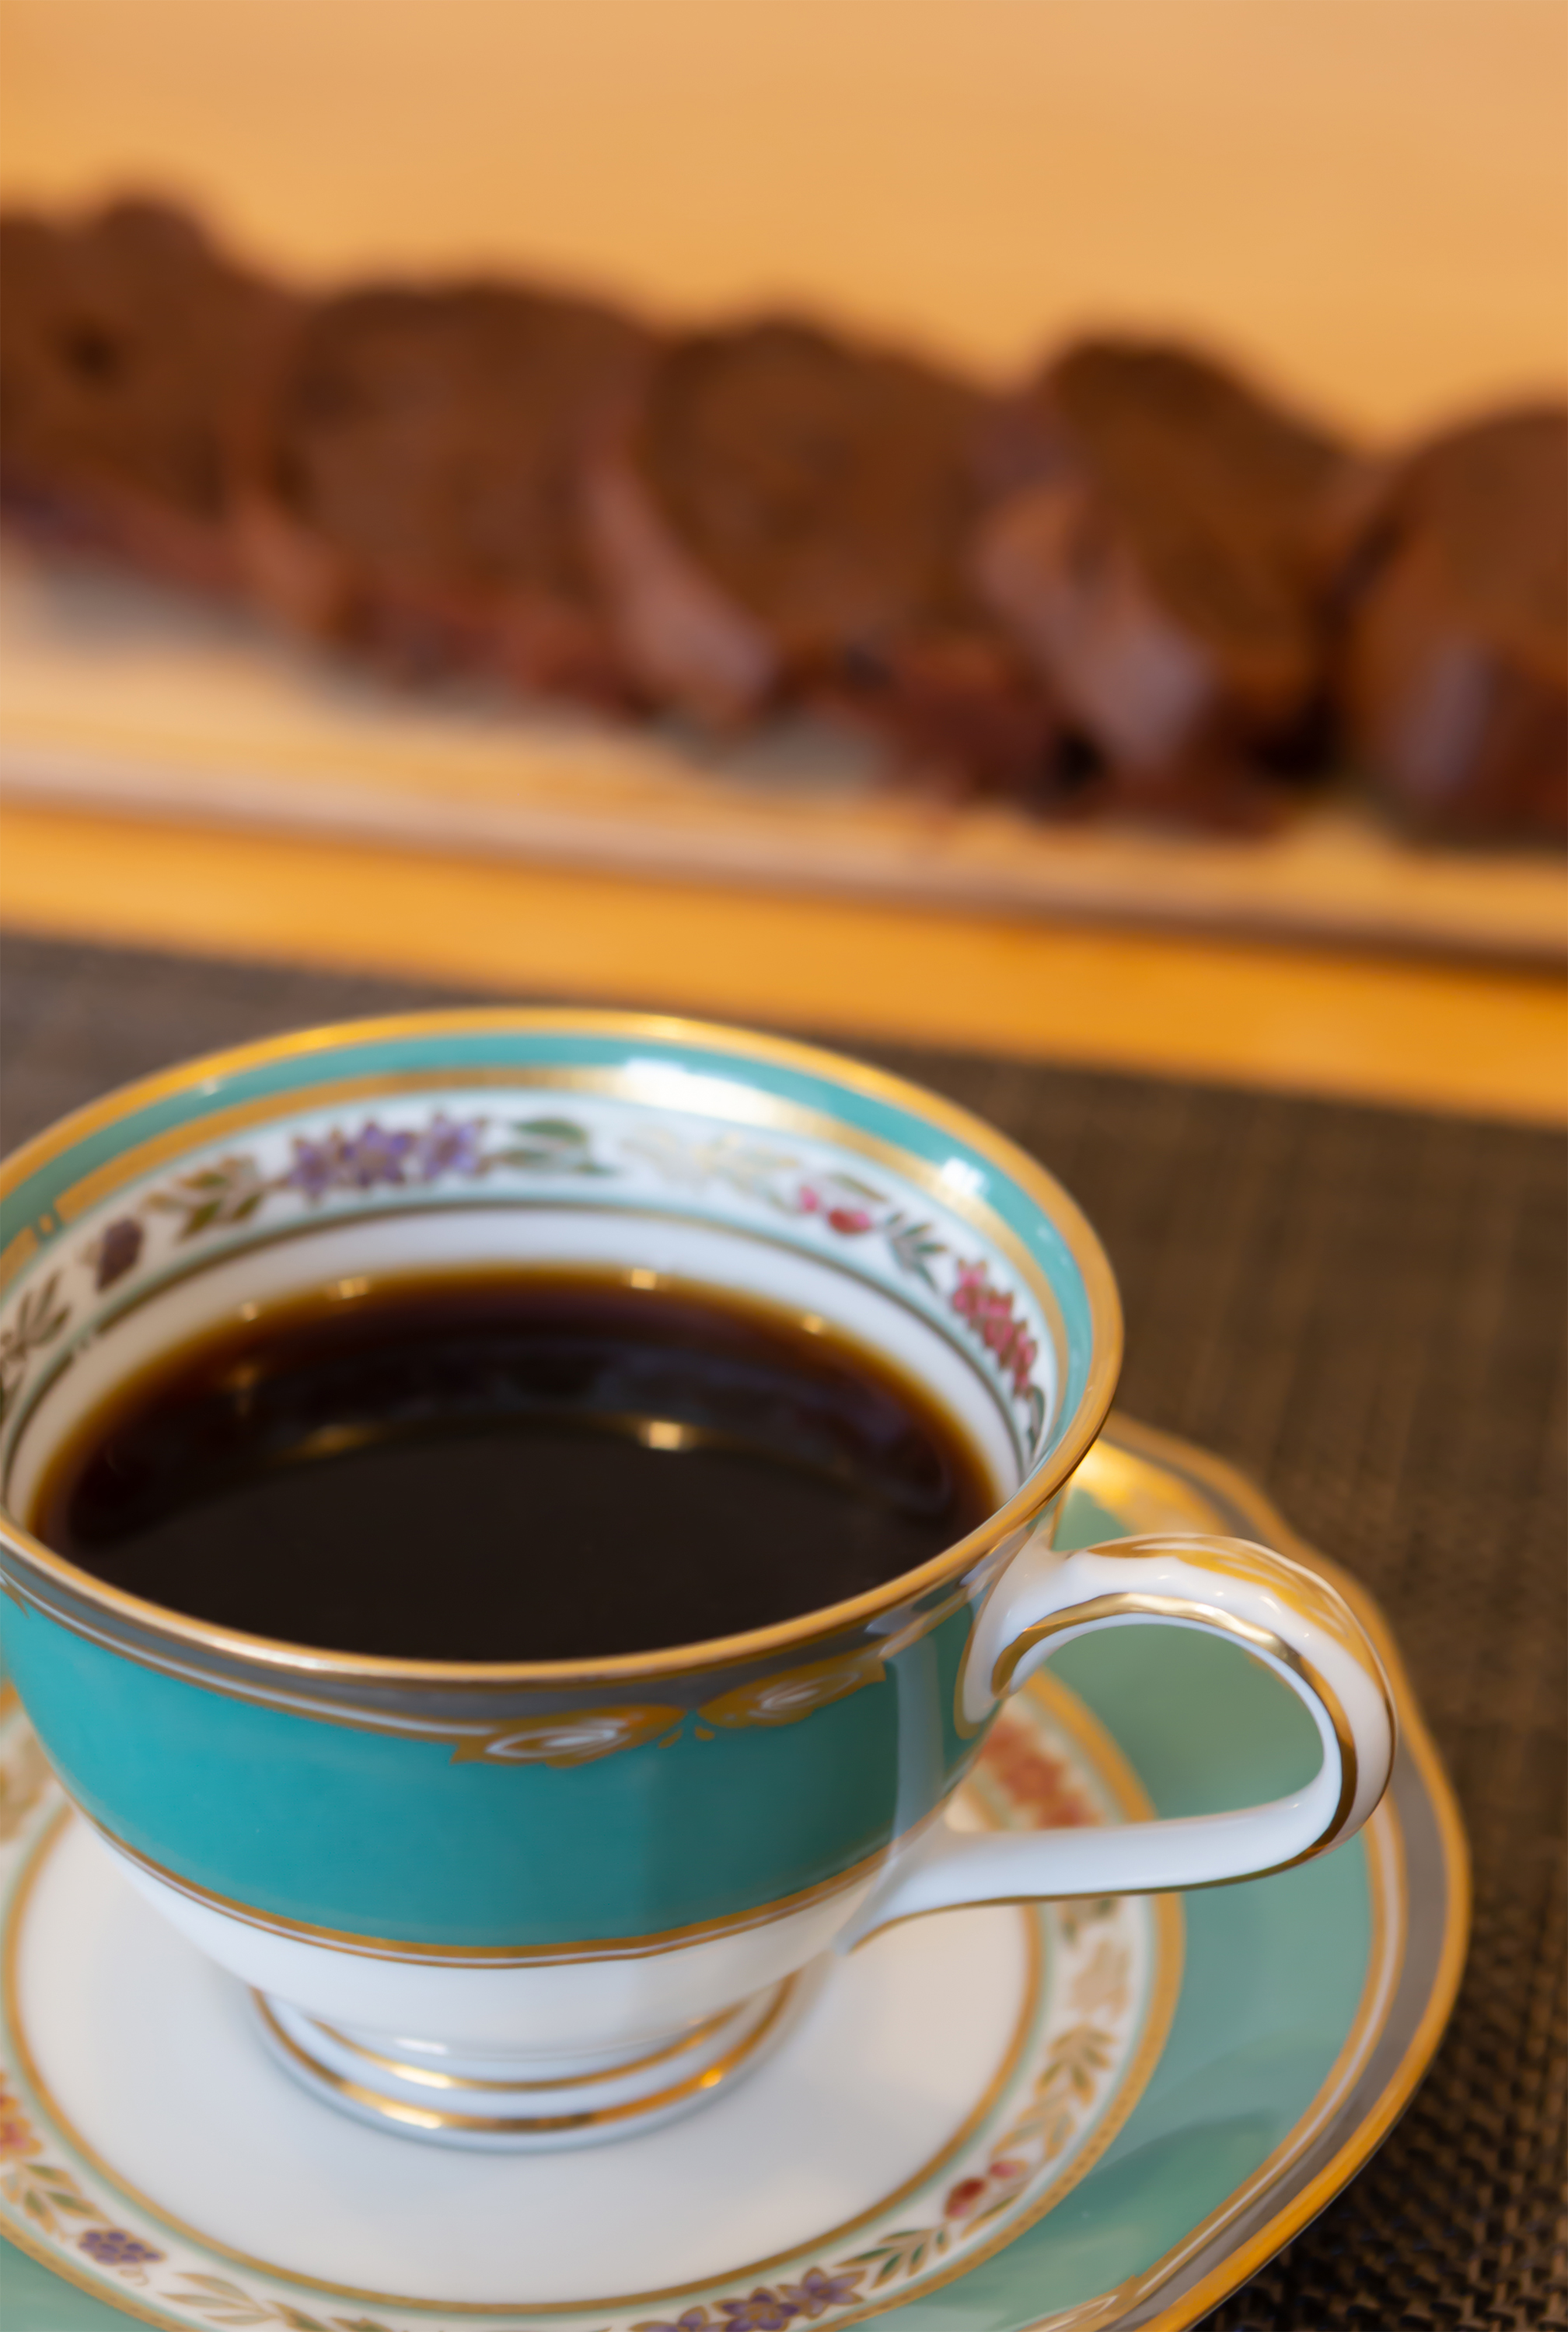 コーヒー 珈琲 無料の高画質フリー写真素材 イメージズラボ